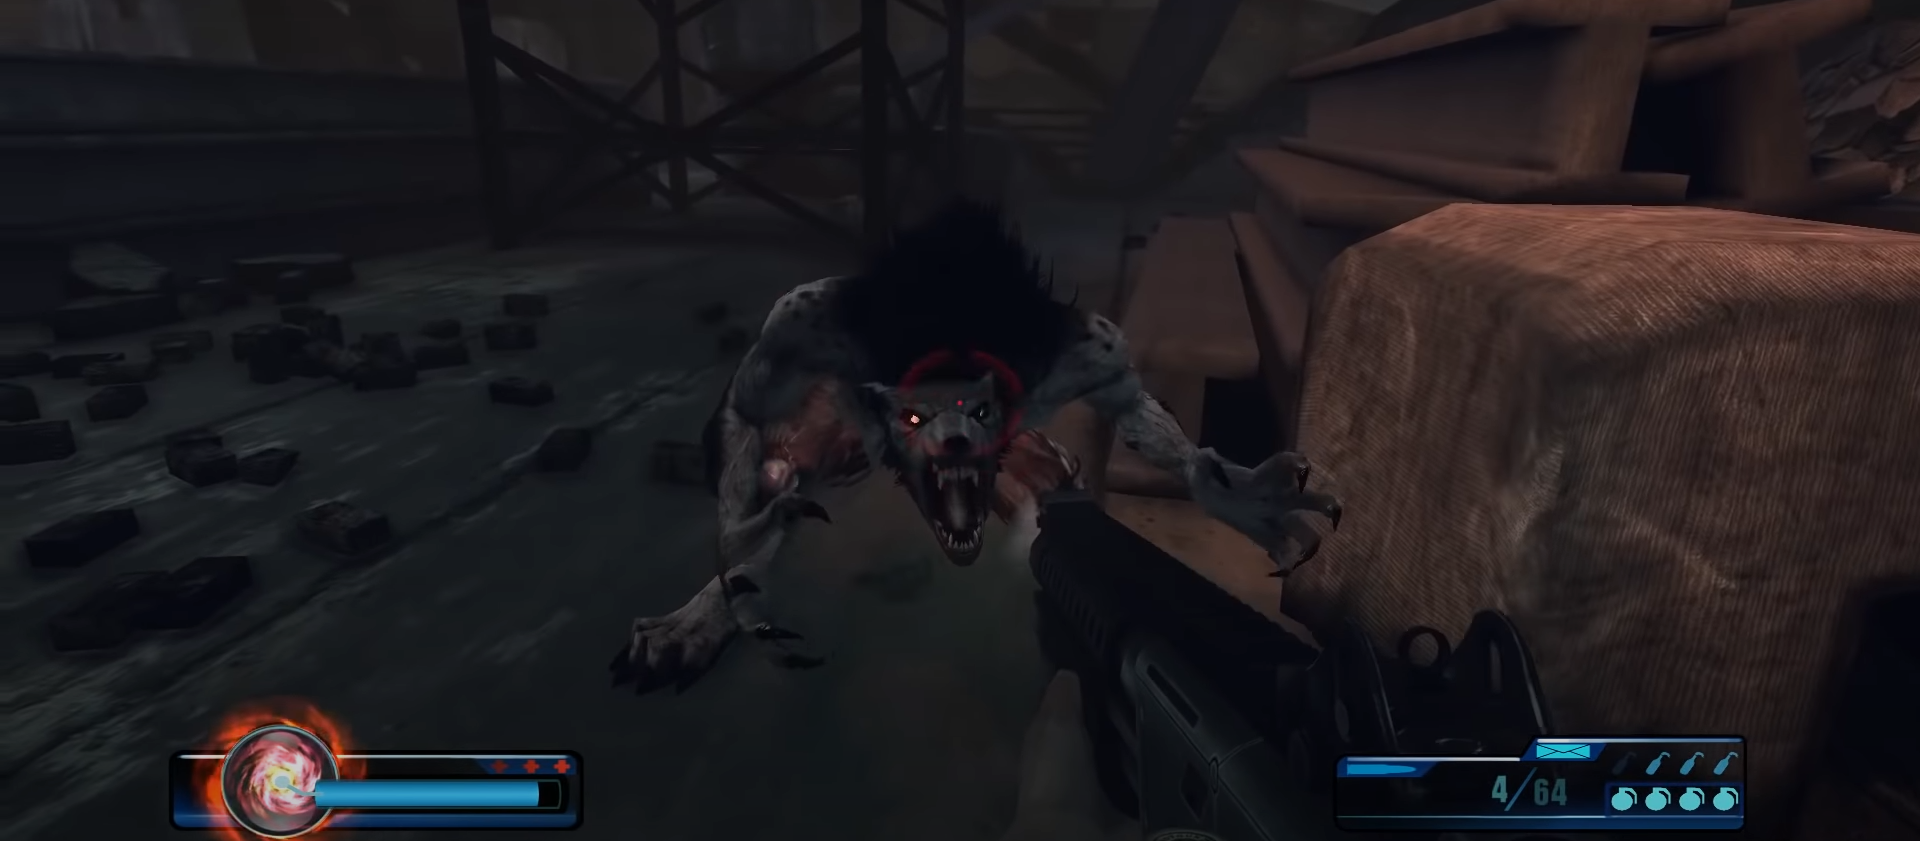 Fighting a Werewolf